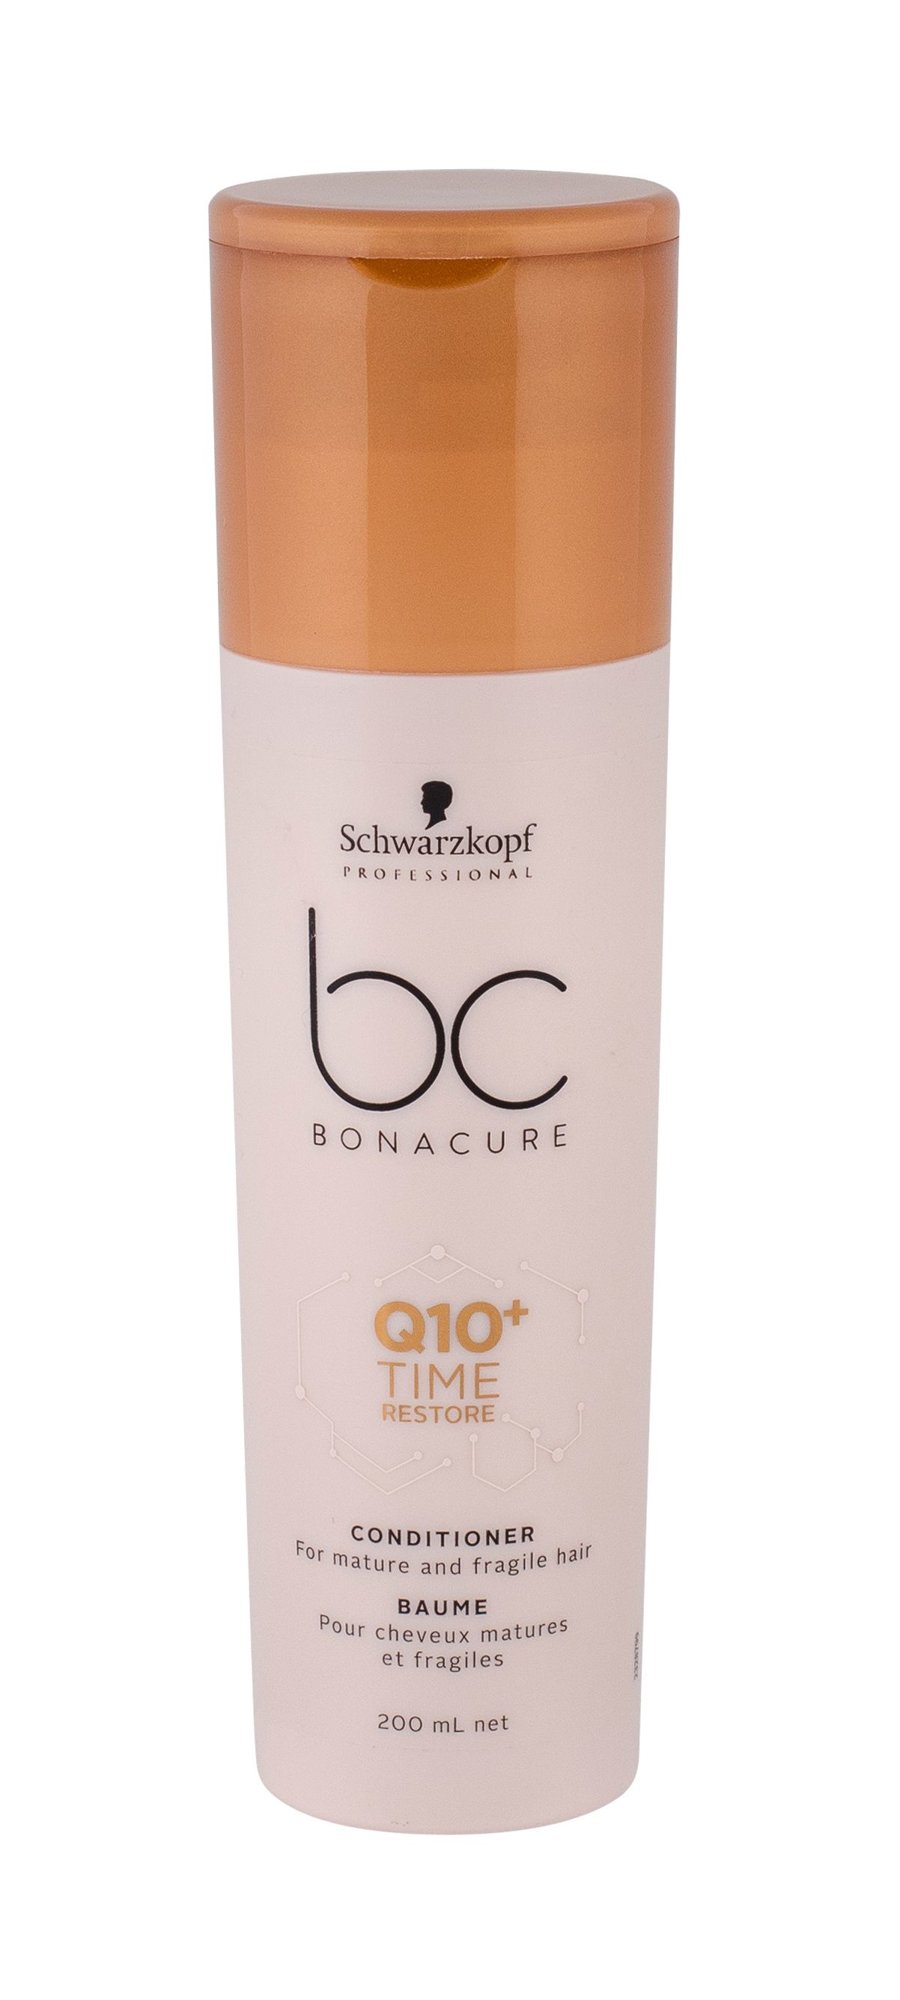 Schwarzkopf  BC Bonacure Q10+ Time Restore 200ml kondicionierius